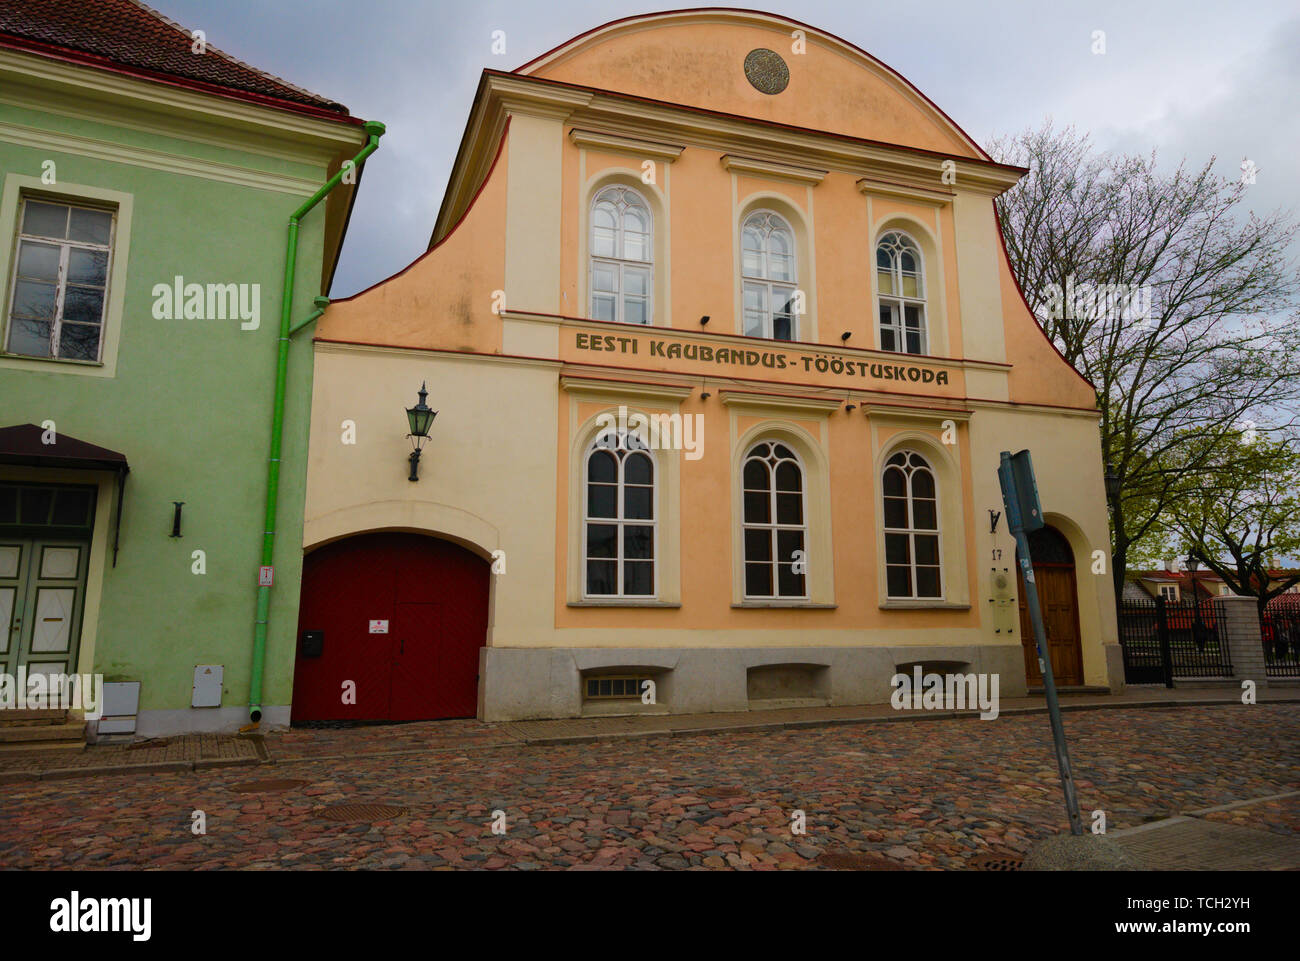 Eesti Kaubandus in Tallinn's 'Old Town', Estonia Stock Photo